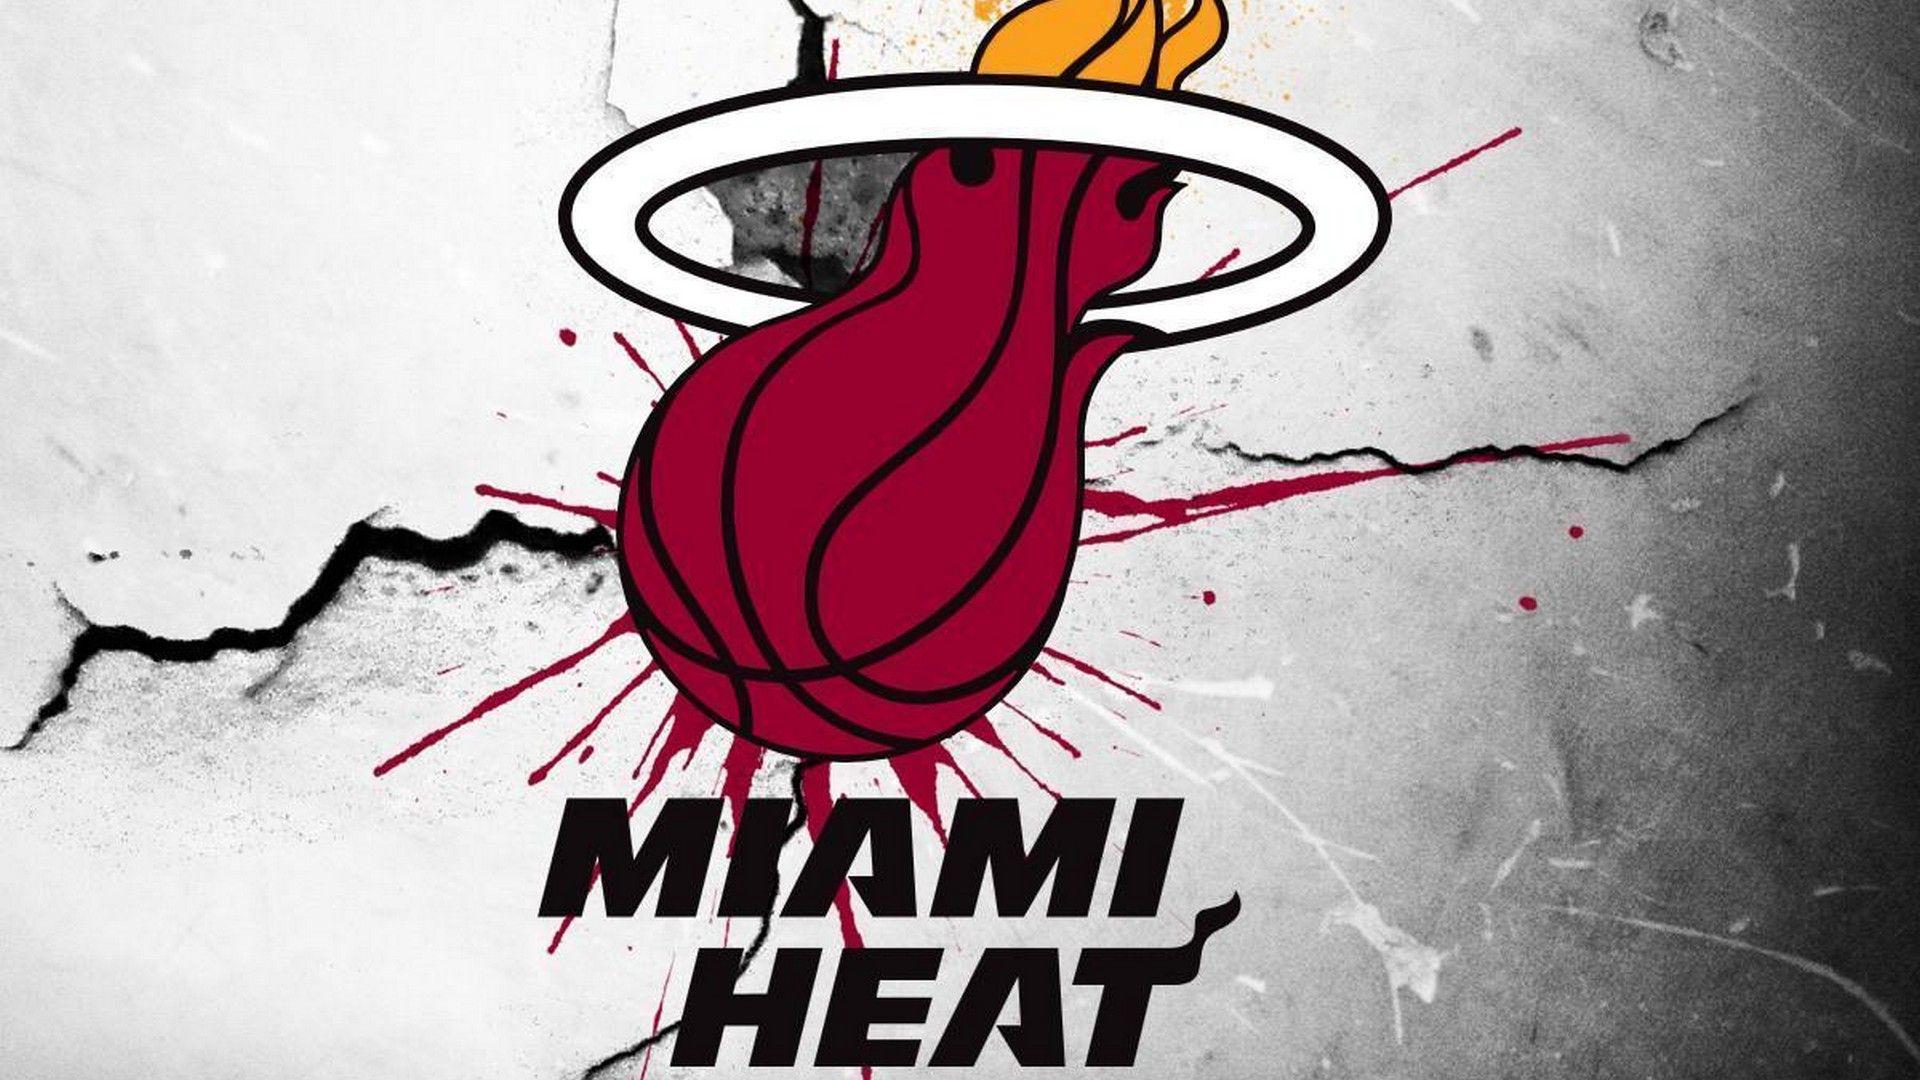 Wallpaper Miami Heat. Miami heat, Miami heat basketball, Miami